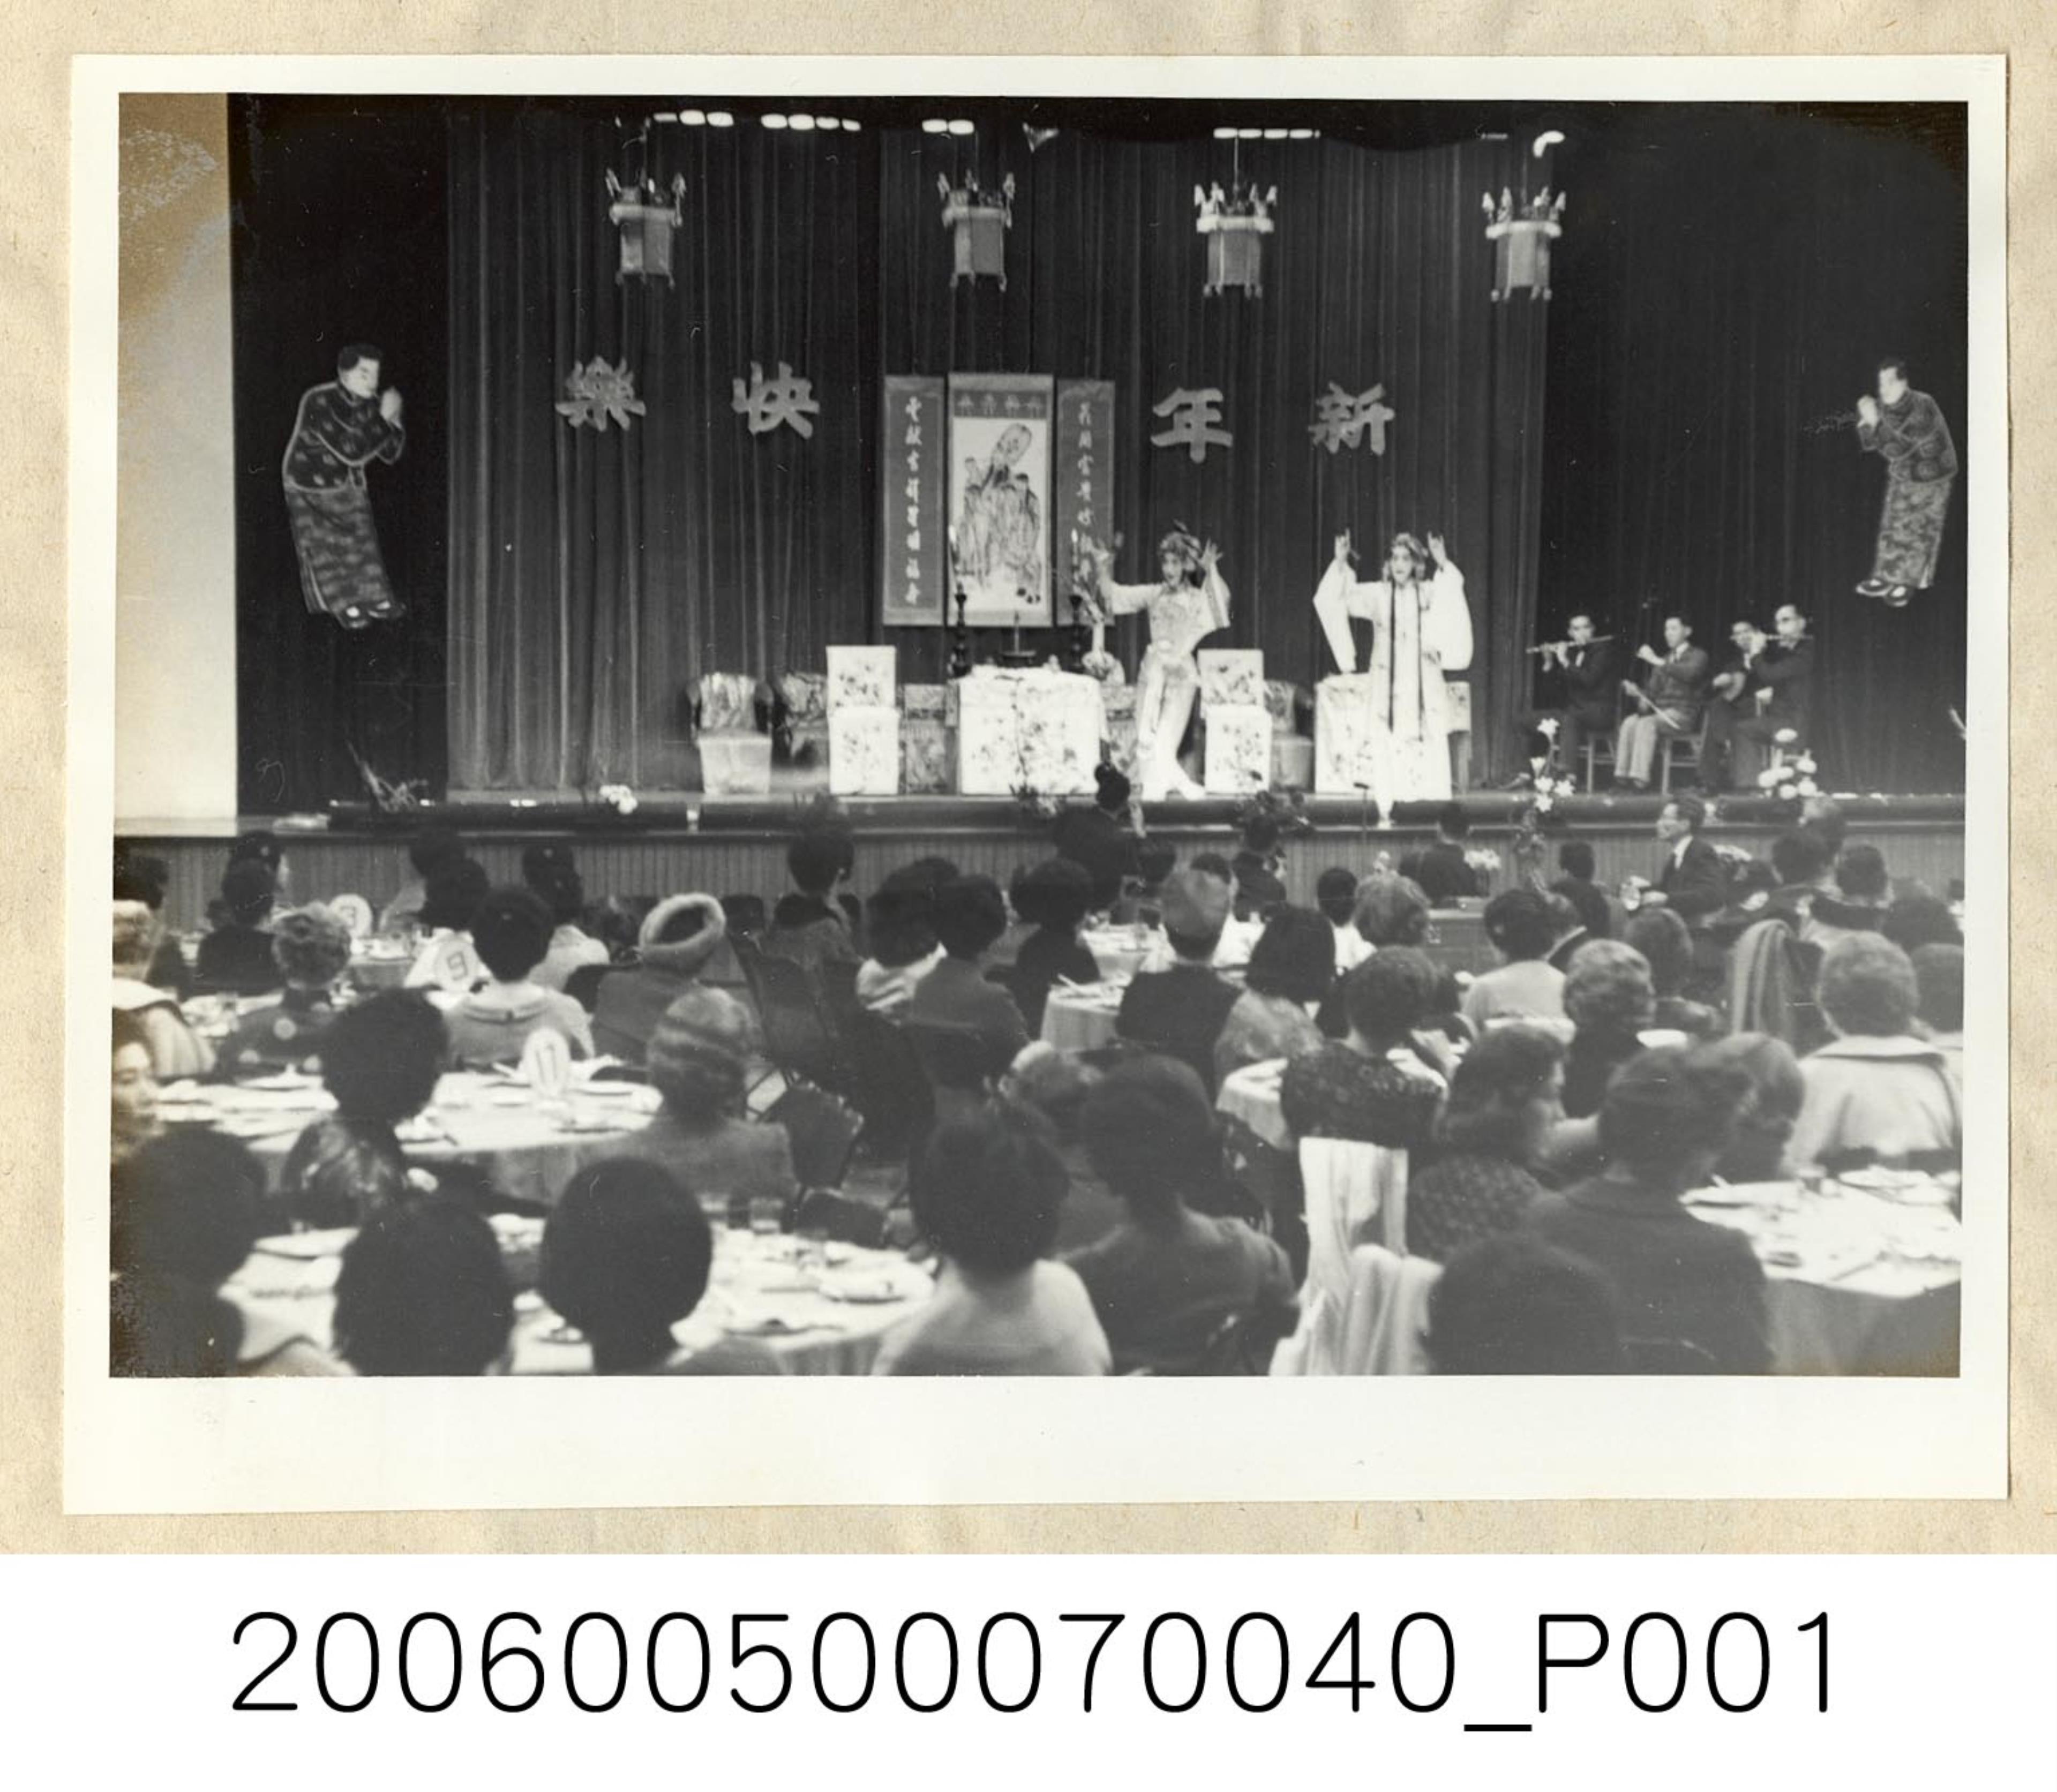 《華僑通訊社新聞照片集》〈臺北國際婦女協會年度聚會〉 (共1張)